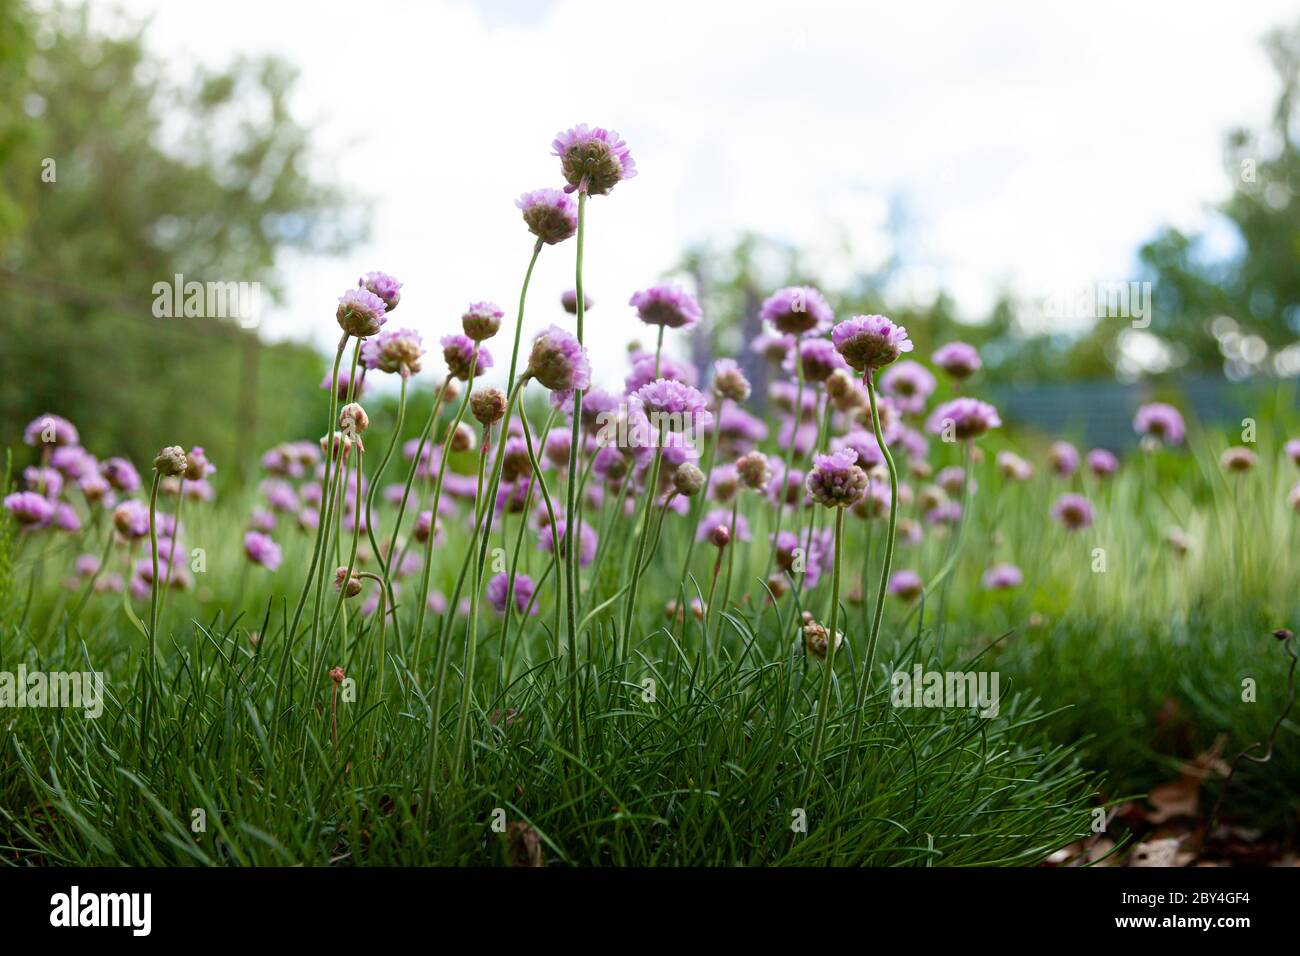 Fleurs violettes dans le jardin. L'oignon, ou ciboulette, est une plante herbacée vivace dont le nom latin est Allium schoenoprasum. Banque D'Images